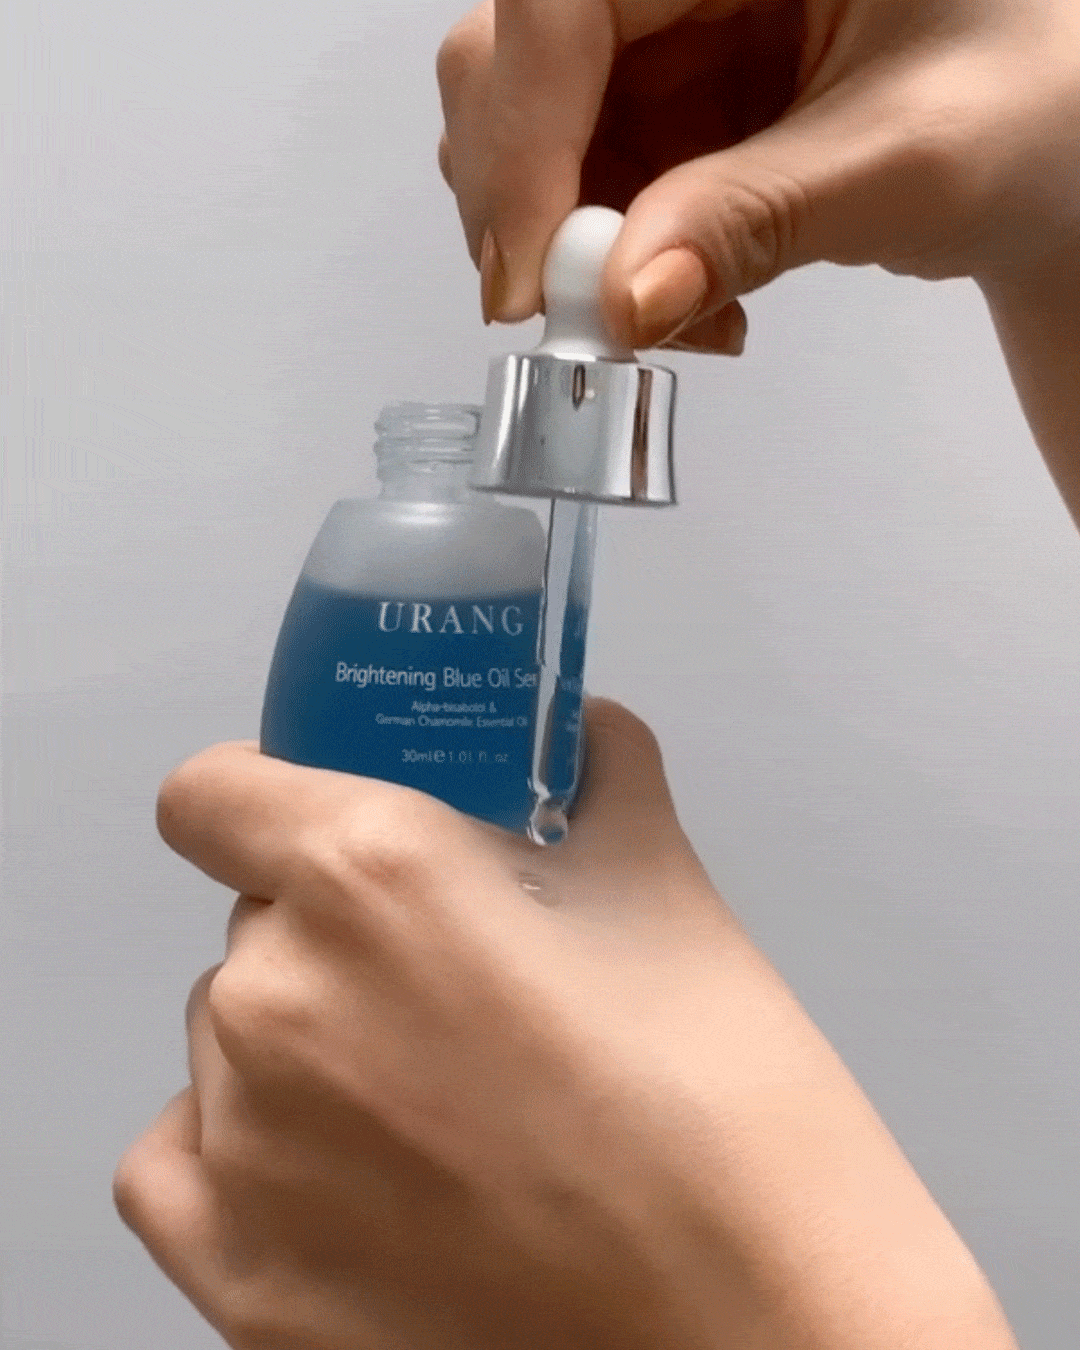 Ohlolly Korean Skincare Organic Urang Brightening Blue Oil Serum 